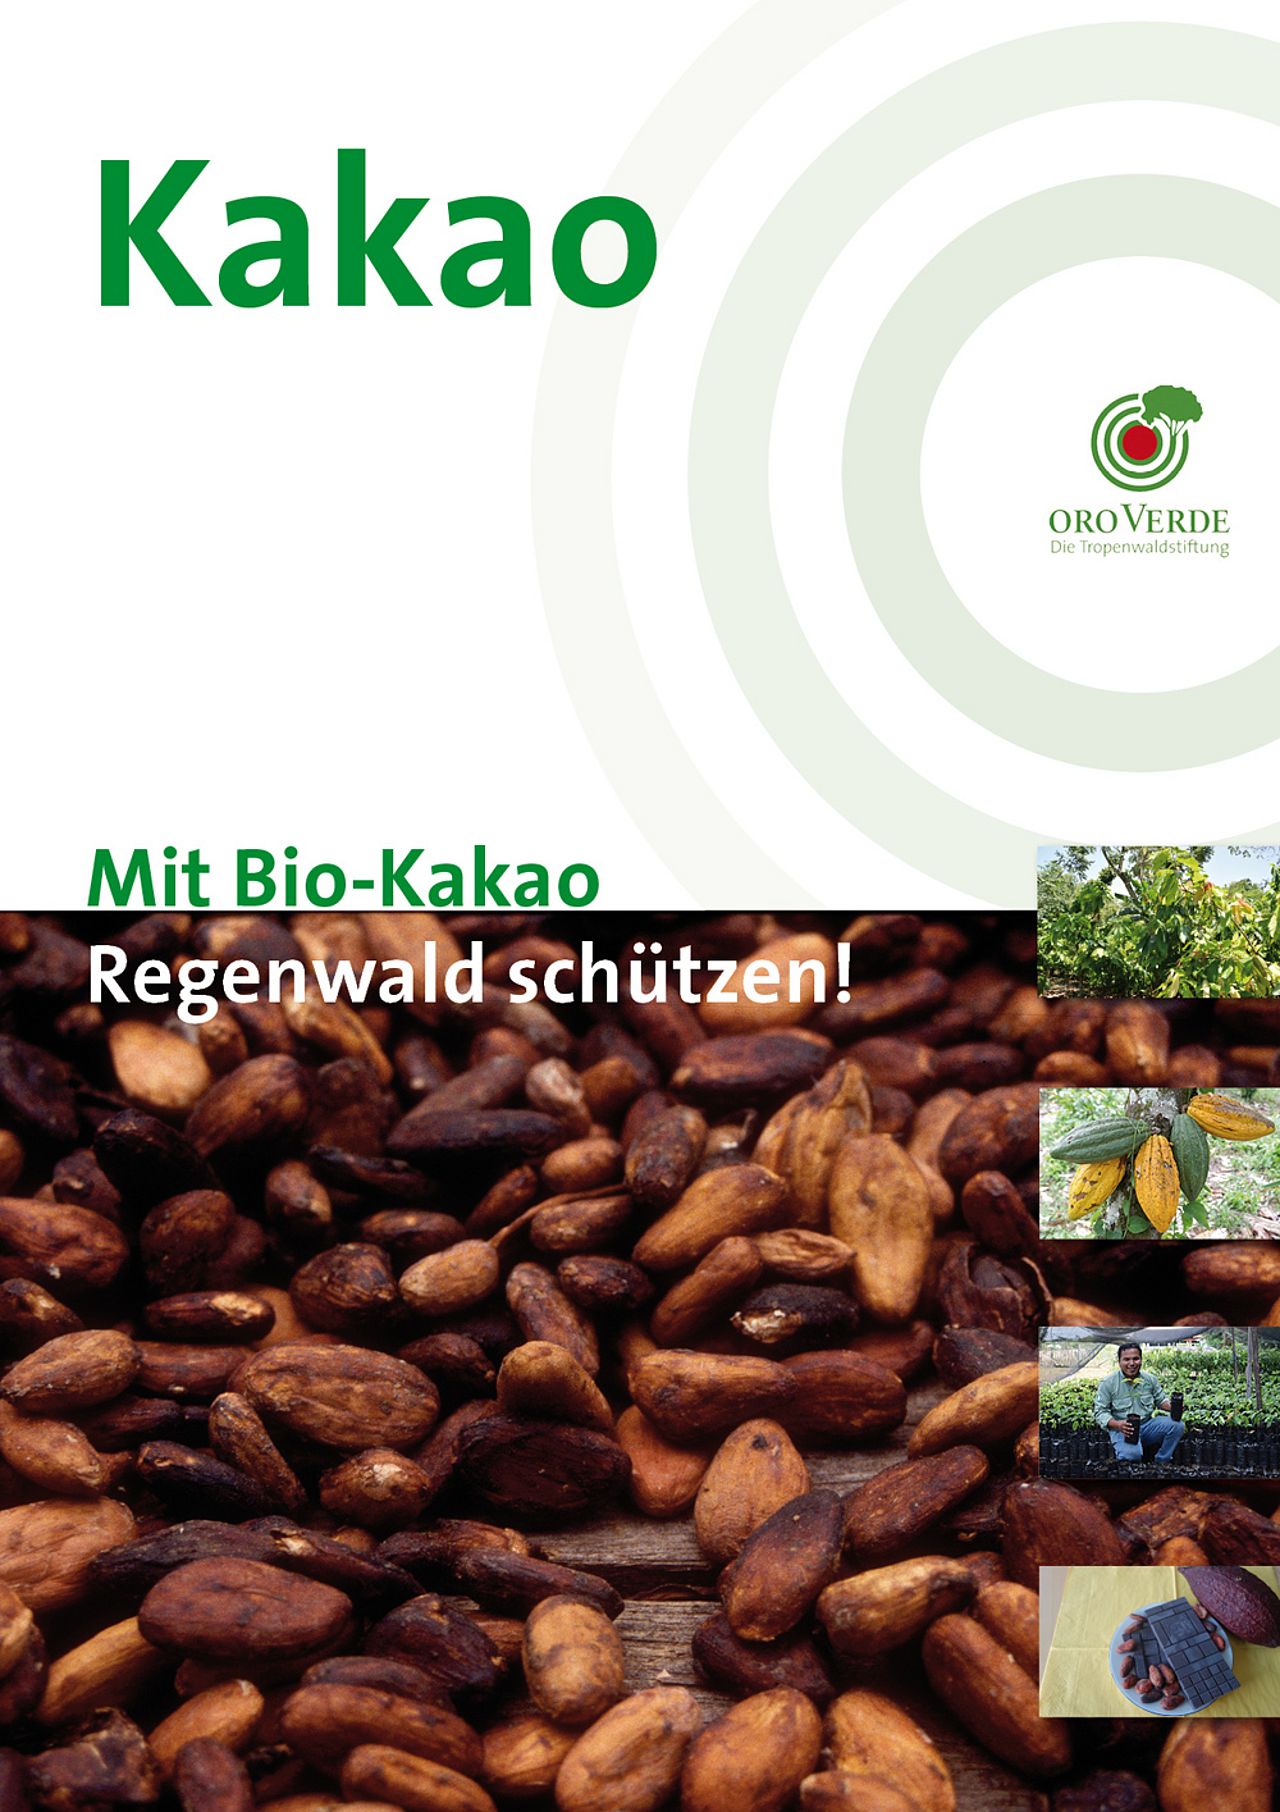 Regenwald schützen mit Bio-Kakao - Ein Faktenpapier von OroVerde